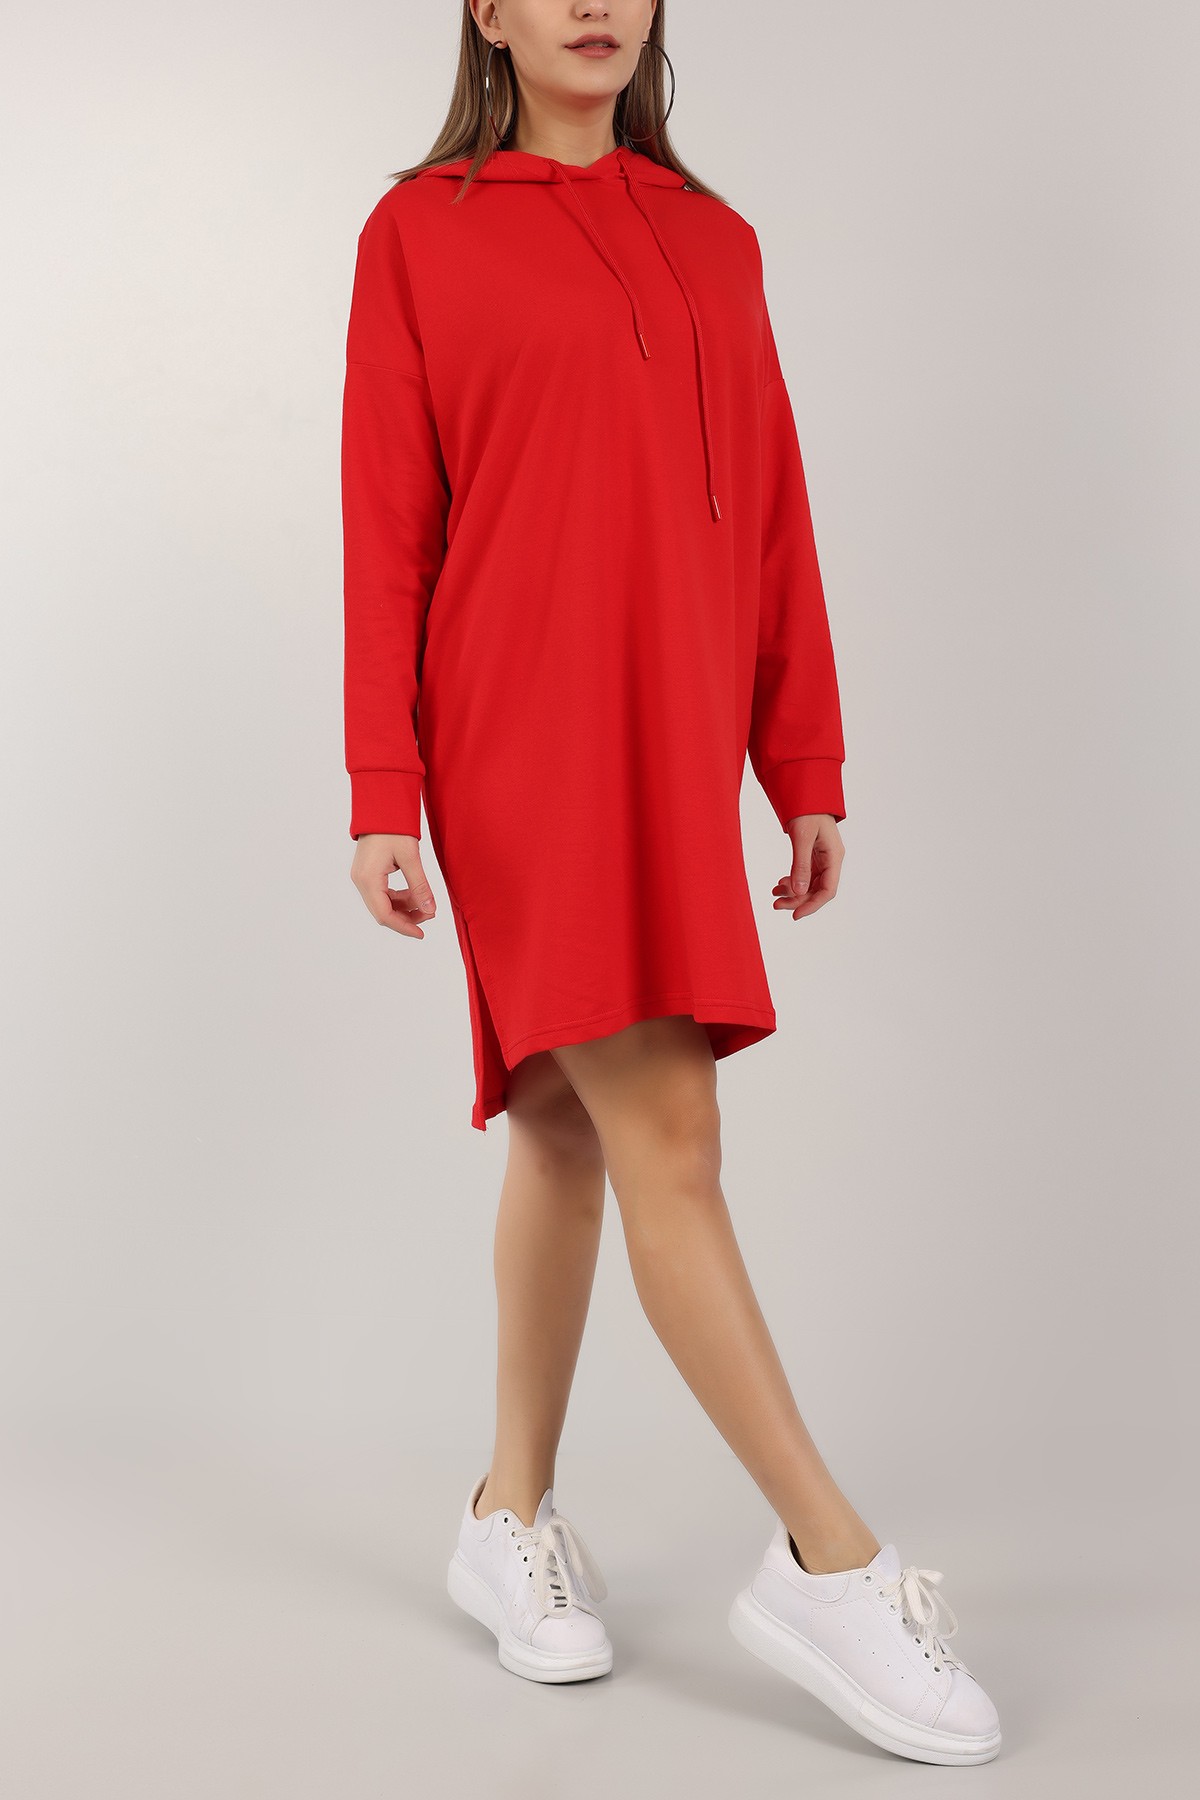 Kırmızı Kapüşonlu Tunik Elbise 155701